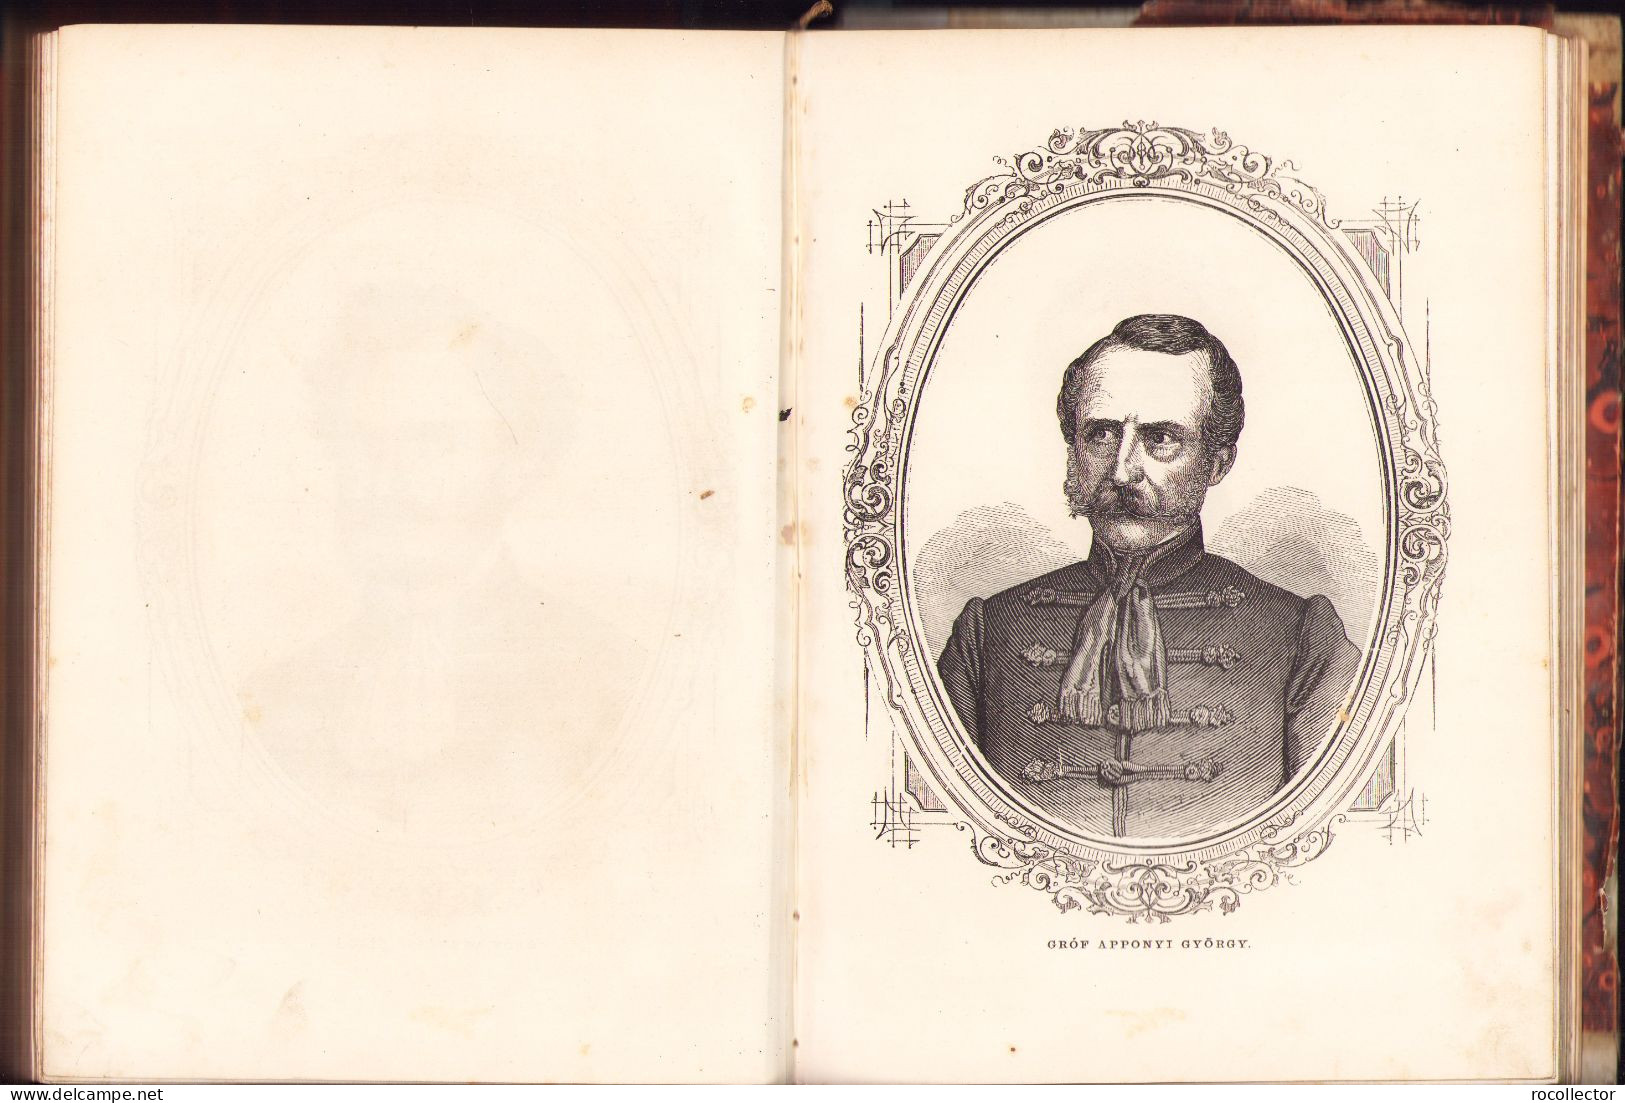 Országgyülési emlékkönyv 1866, Pest, 1866 543SP